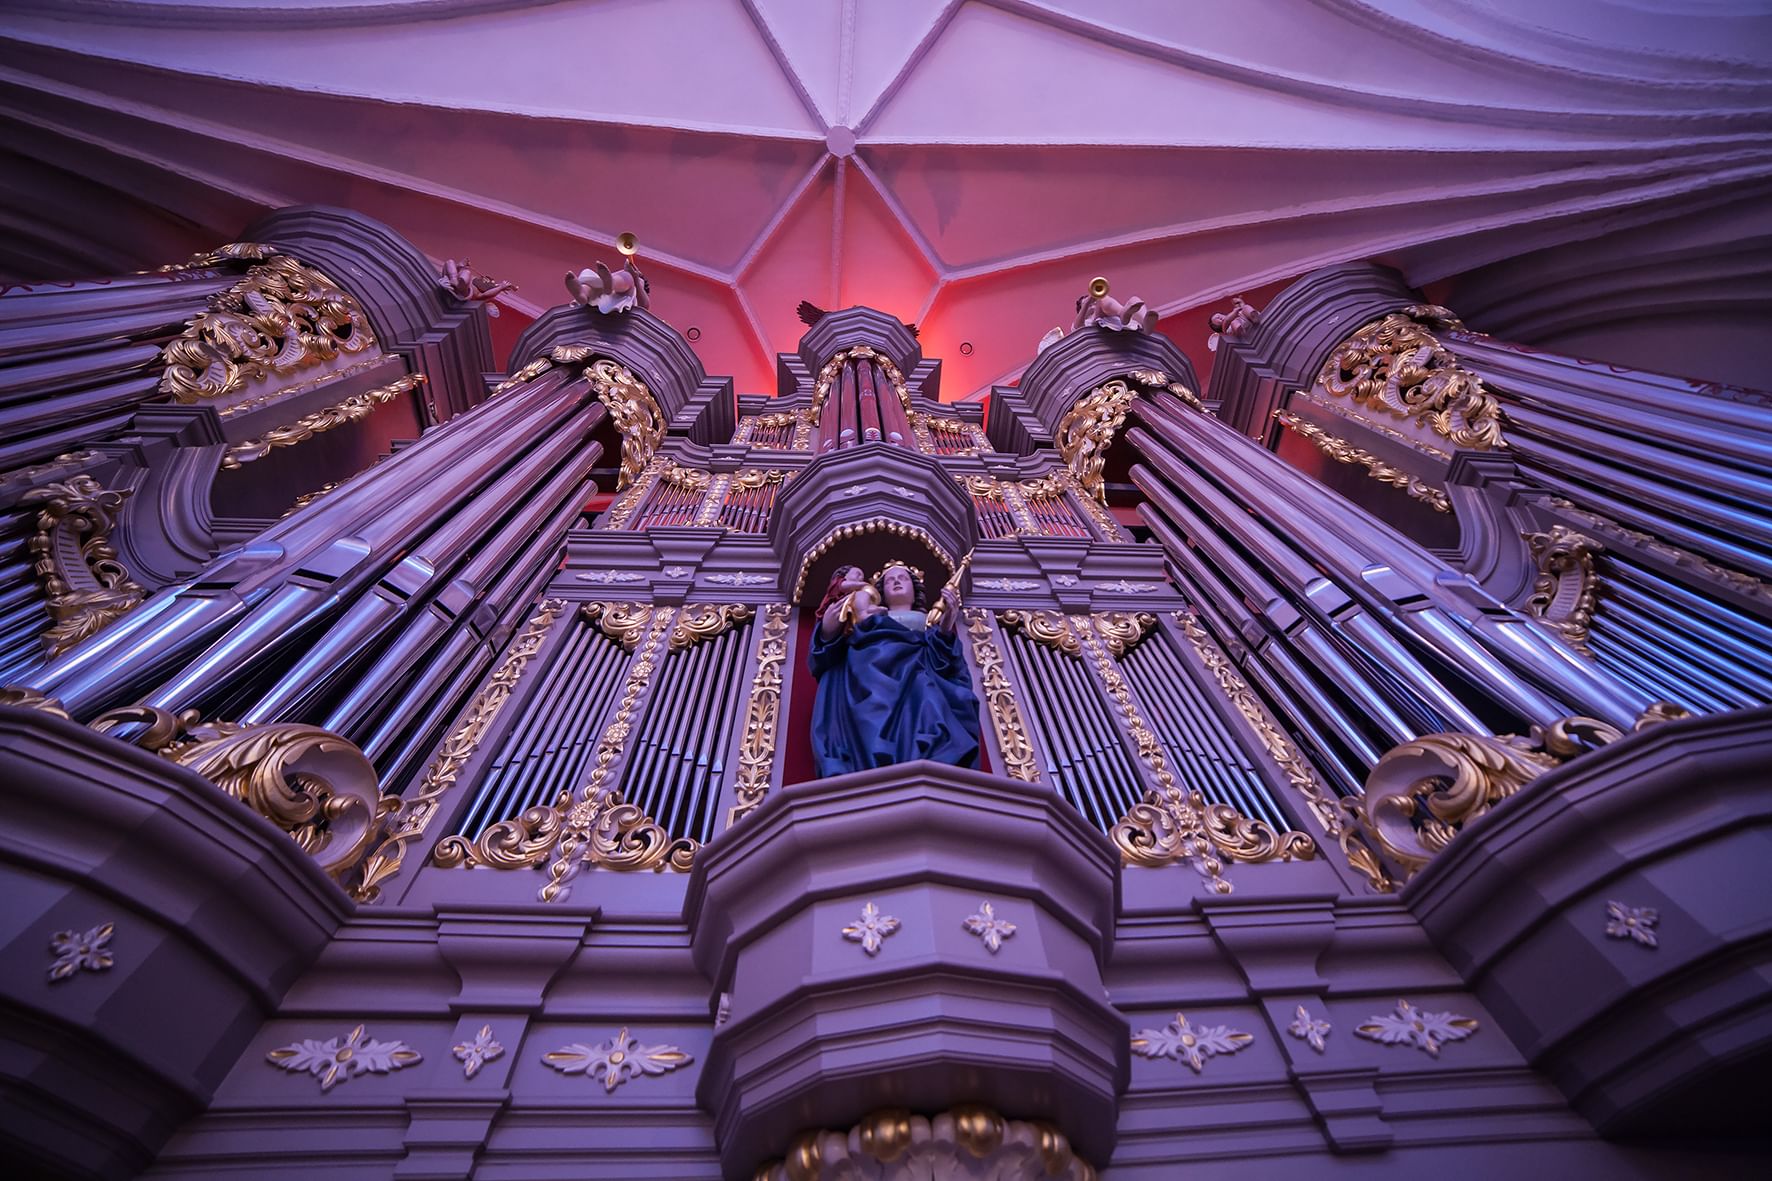 кафедральный собор в калининграде орган